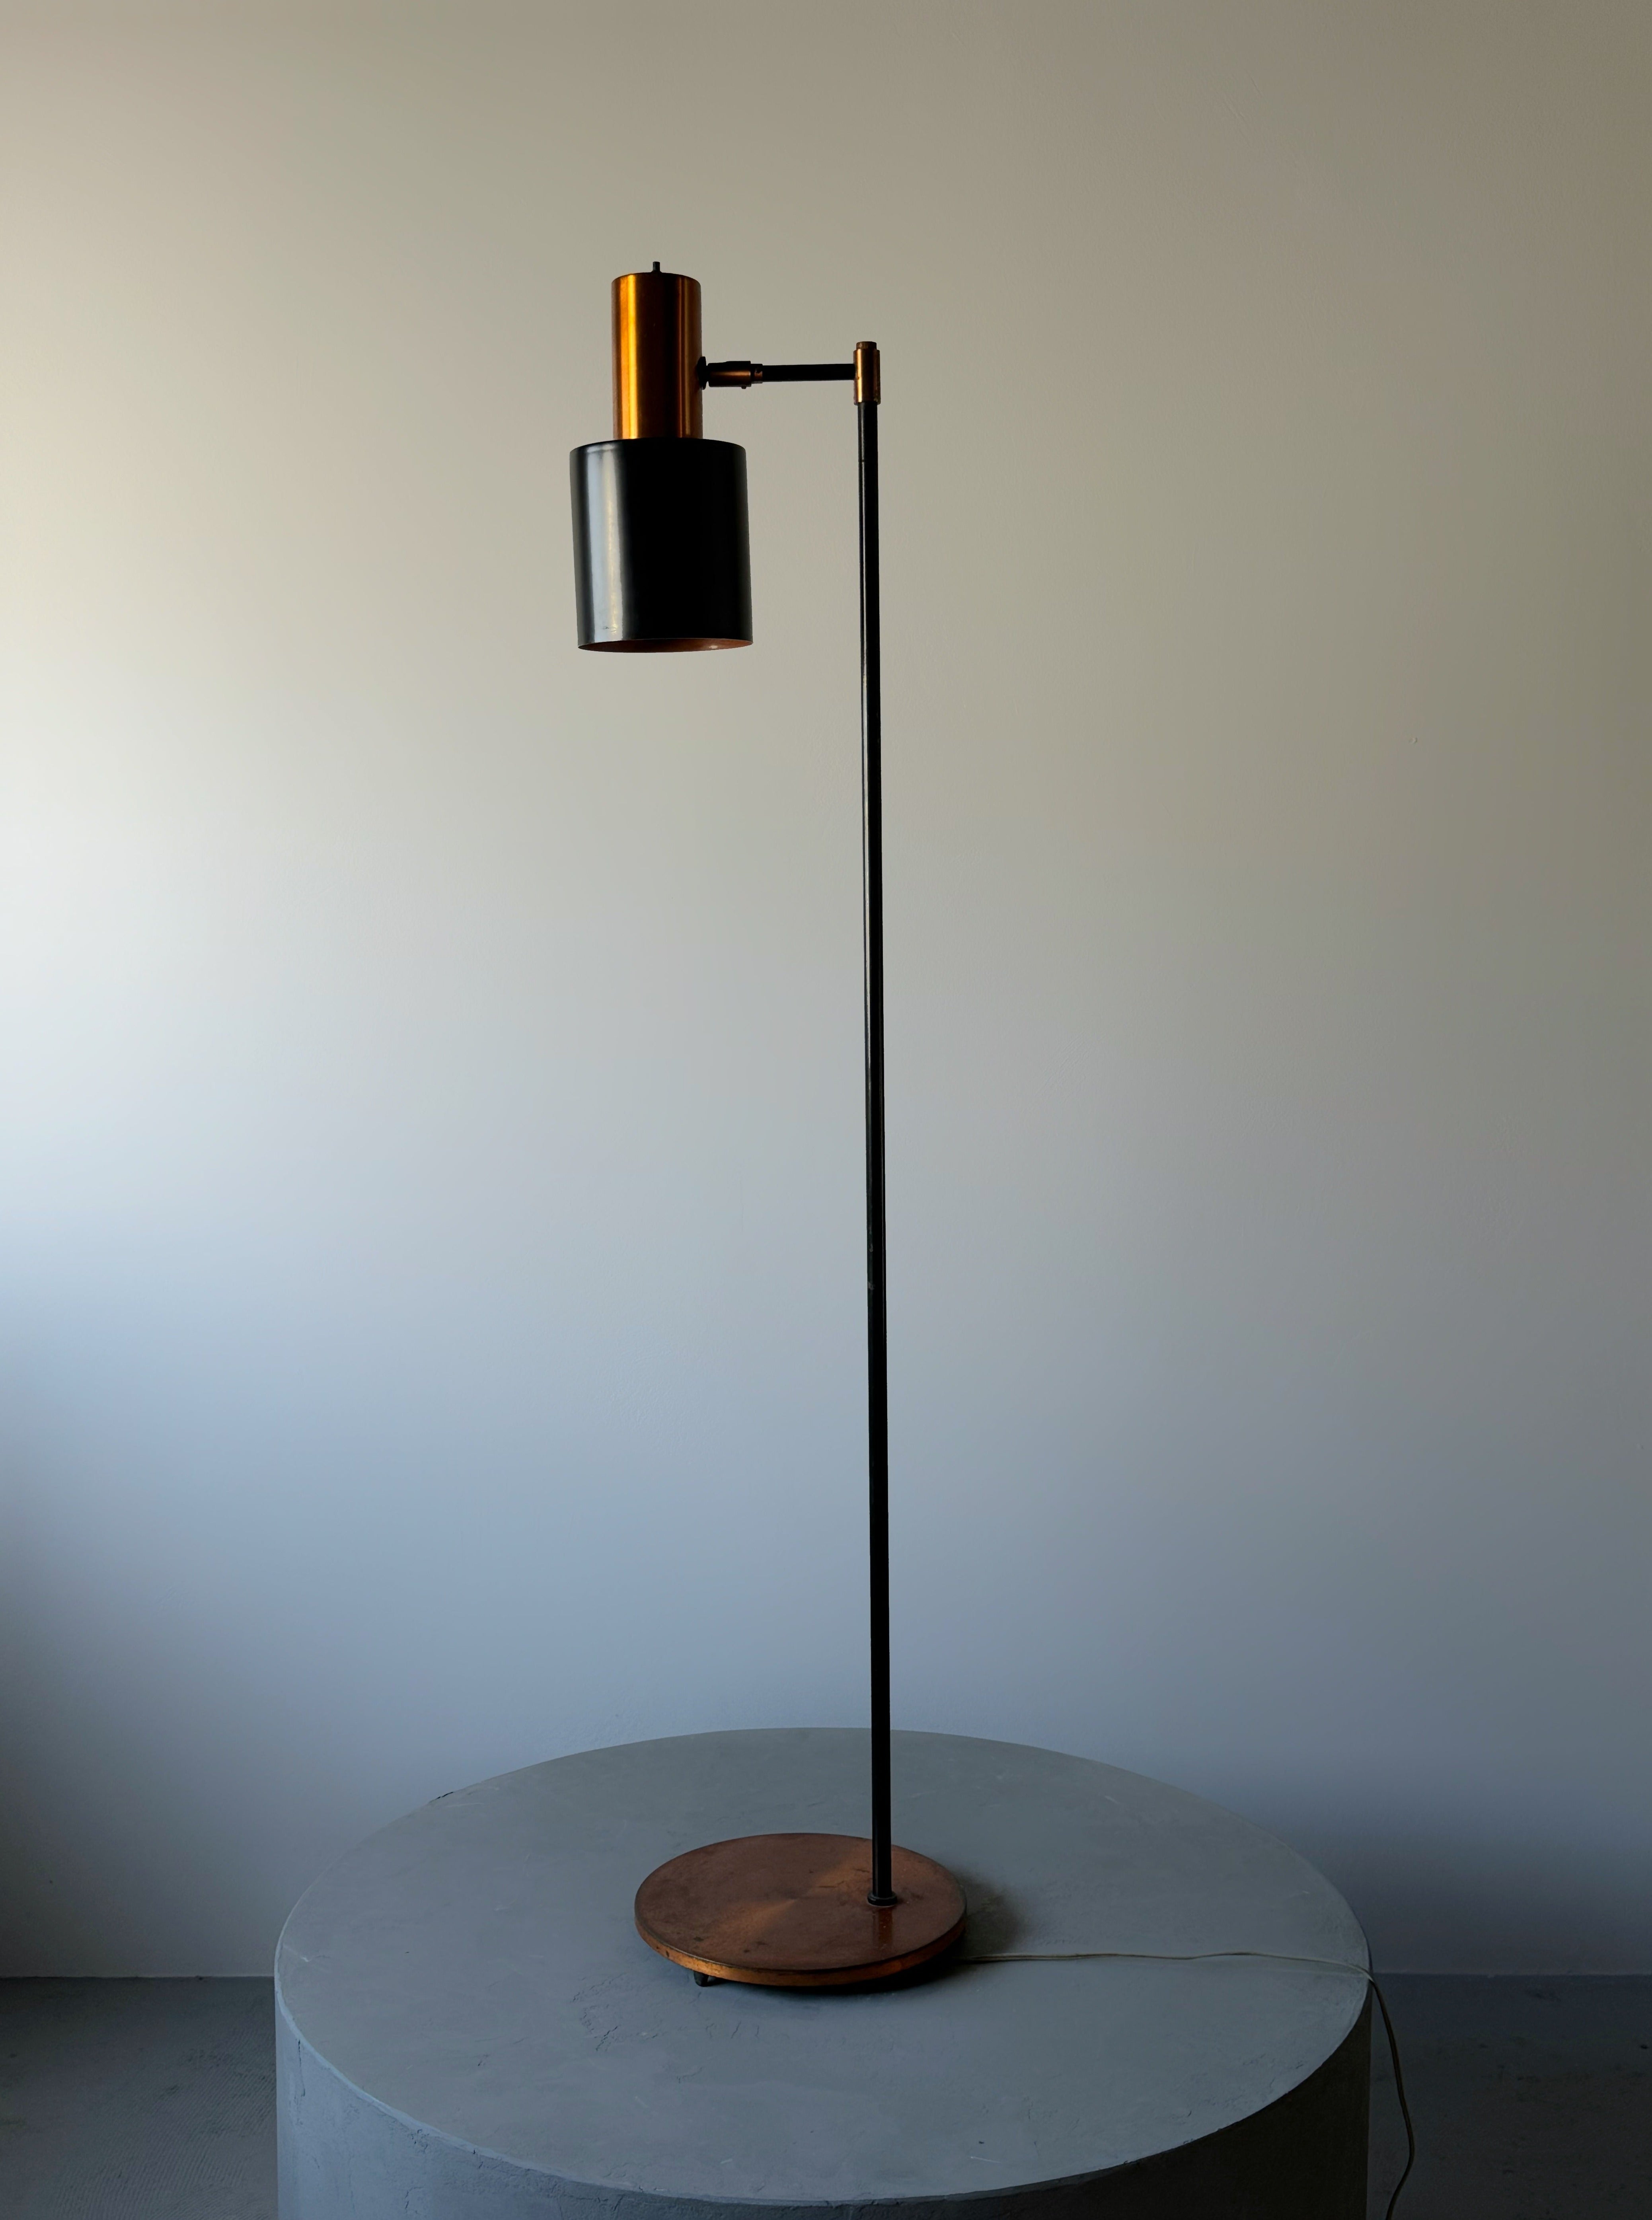 Floor Lamp "Studio" designed by Jo Hammerborg for Fog & Mørup